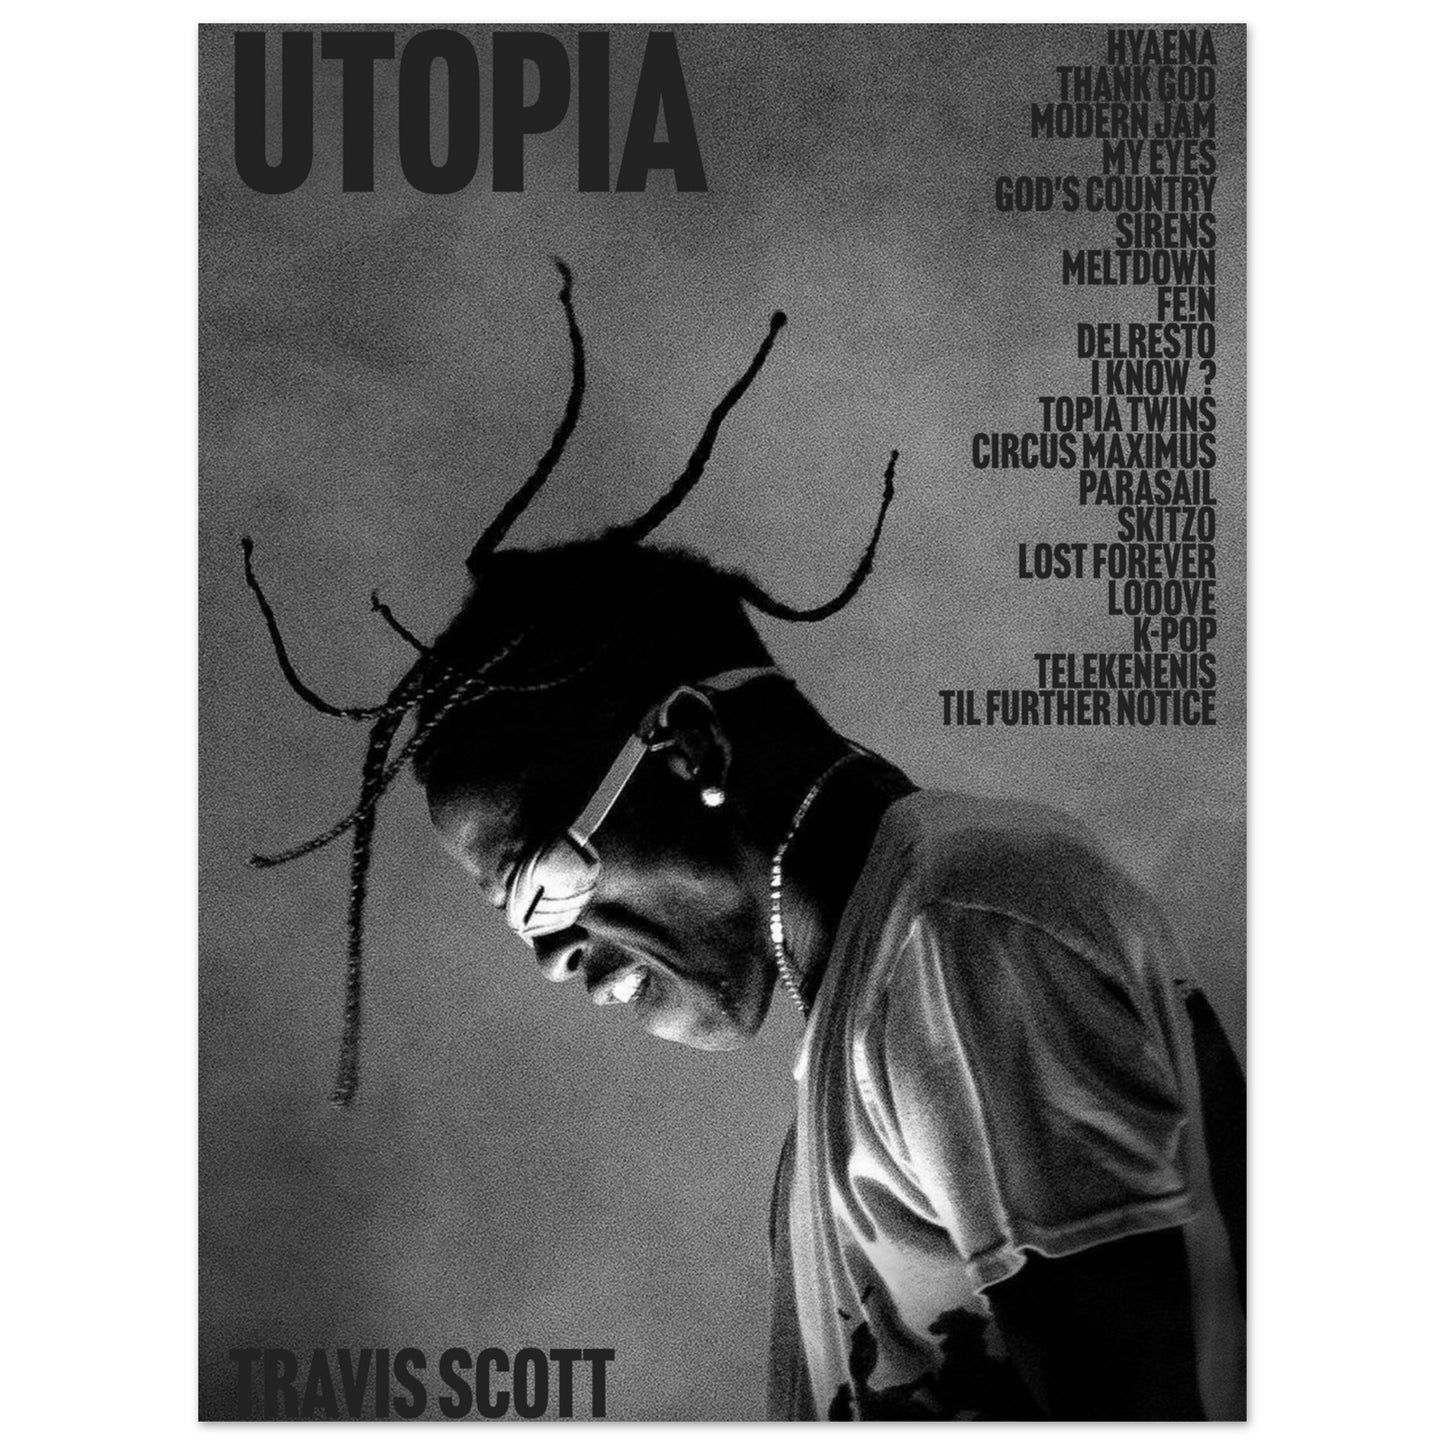 Travis Scott Utopia